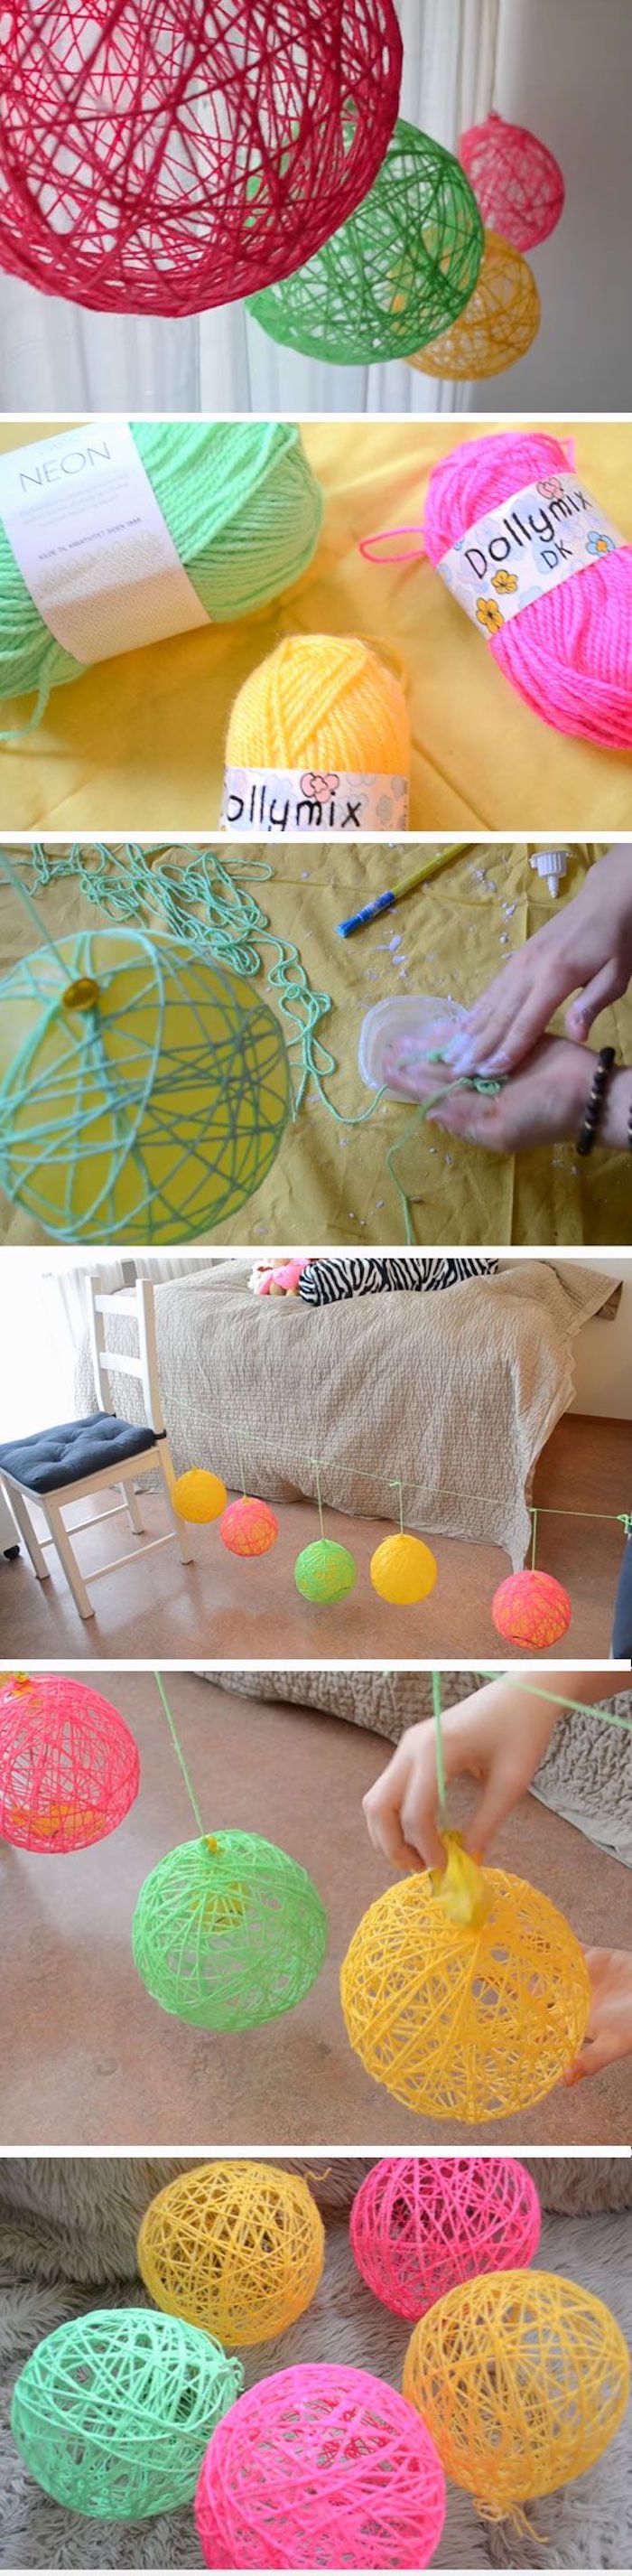 DIY deko ideja, barvita kroglice preje ali volnene rezkarje, soba okrasitev